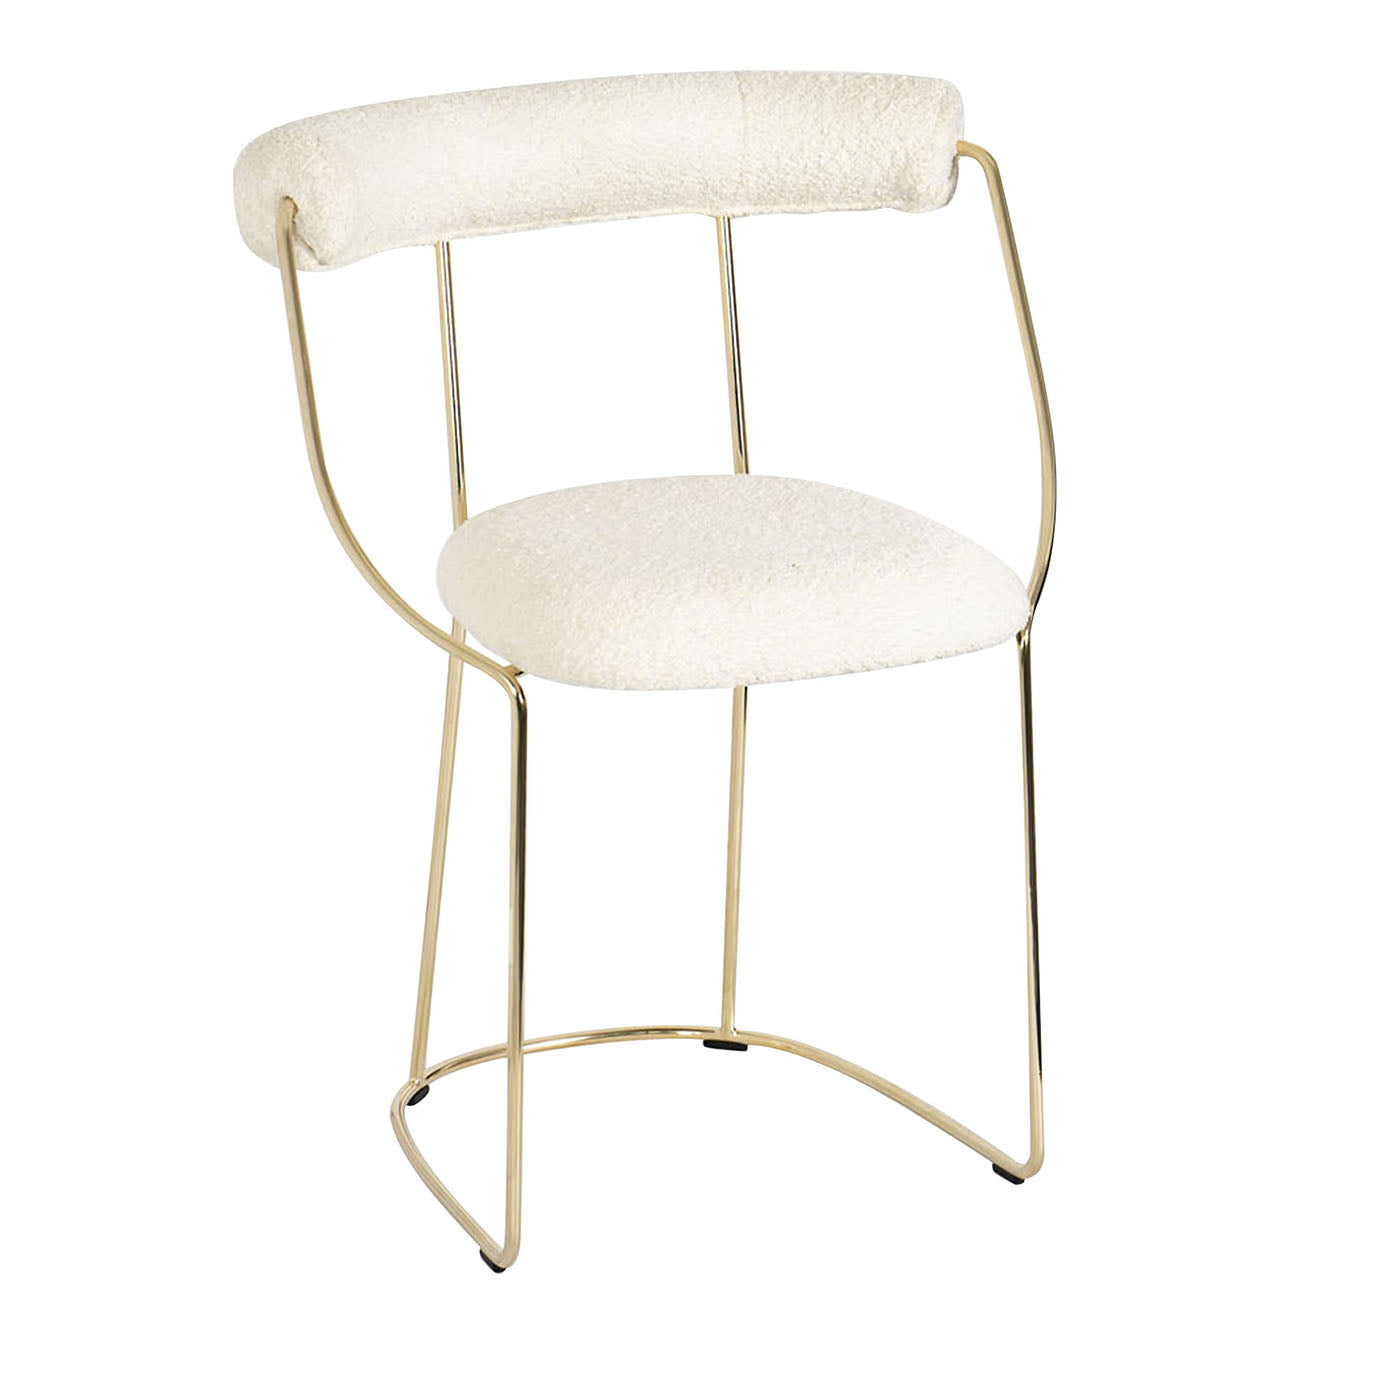 Fran Gold Chair - Main view